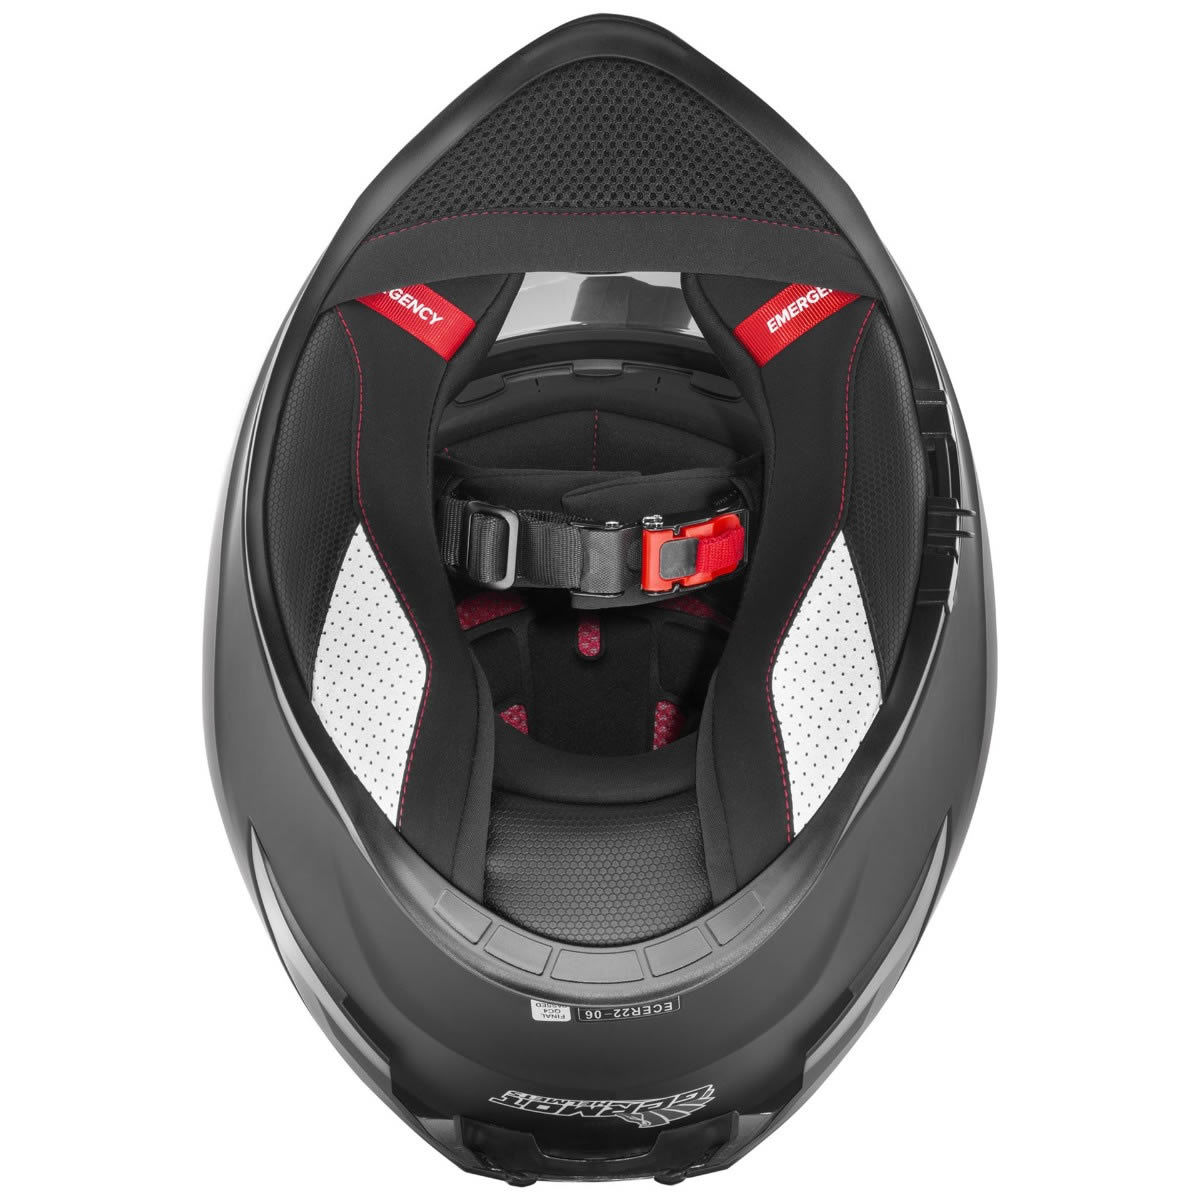 Germot GM 350 Helm, schwarz matt